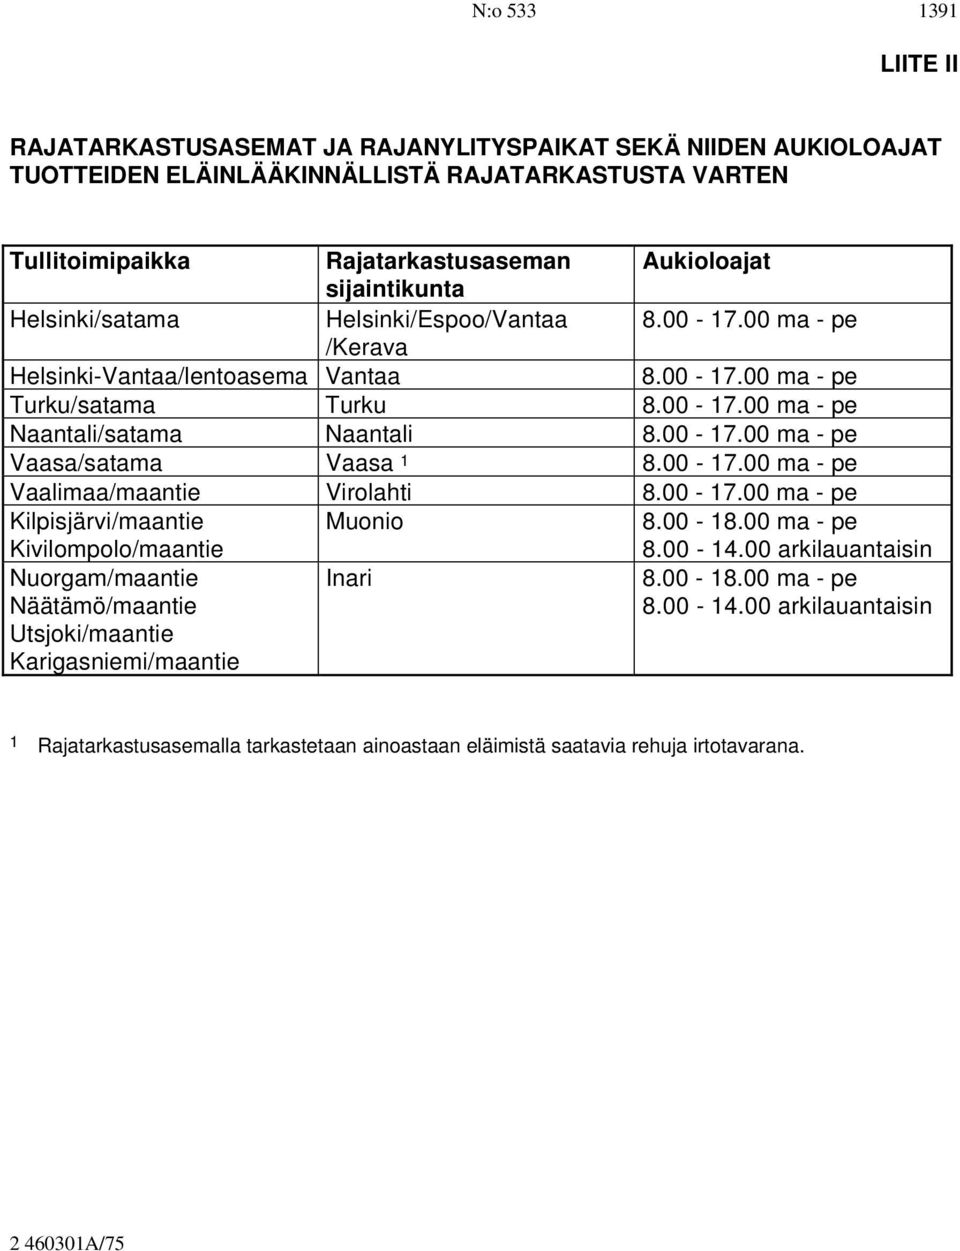 00-17.00 ma - pe Vaasa/satama Vaasa 1 8.00-17.00 ma - pe Vaalimaa/maantie Virolahti 8.00-17.00 ma - pe Kilpisjärvi/maantie Kivilompolo/maantie Muonio 8.00-18.00 ma - pe 8.00-14.